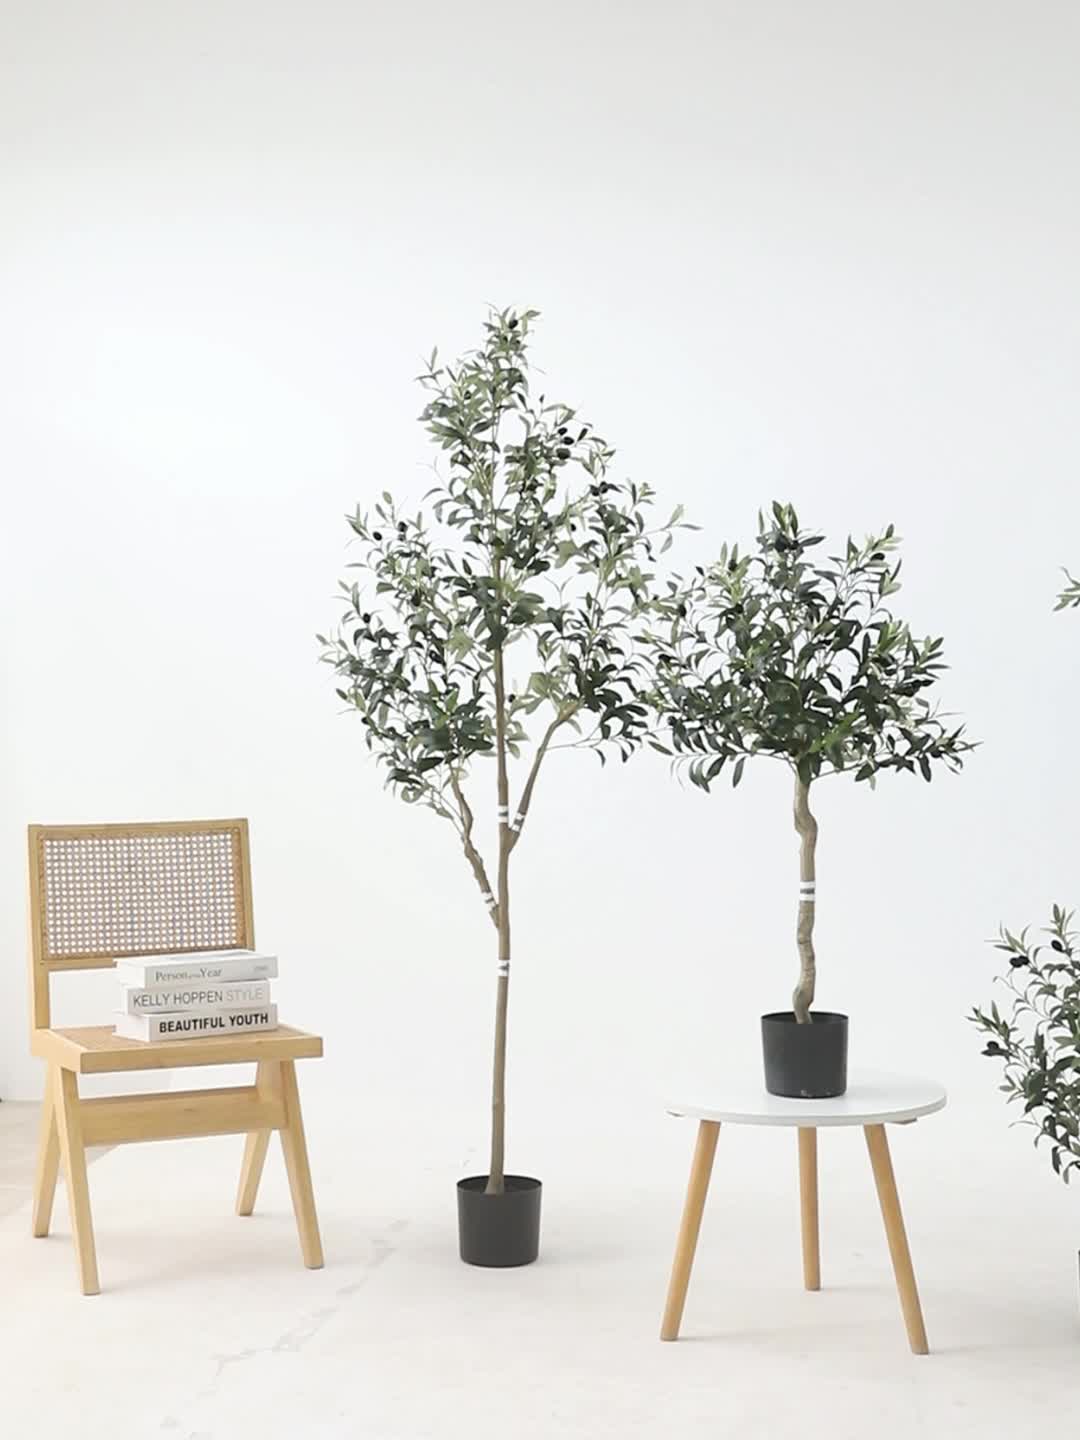  Árboles artificiales de alta simulación árbol de olivo  artificial en maceta, sin árbol de simulación que consume mucho tiempo, dos  opciones, 37 pulgadas de alto, una sola pieza. Plantas artificiales árbol